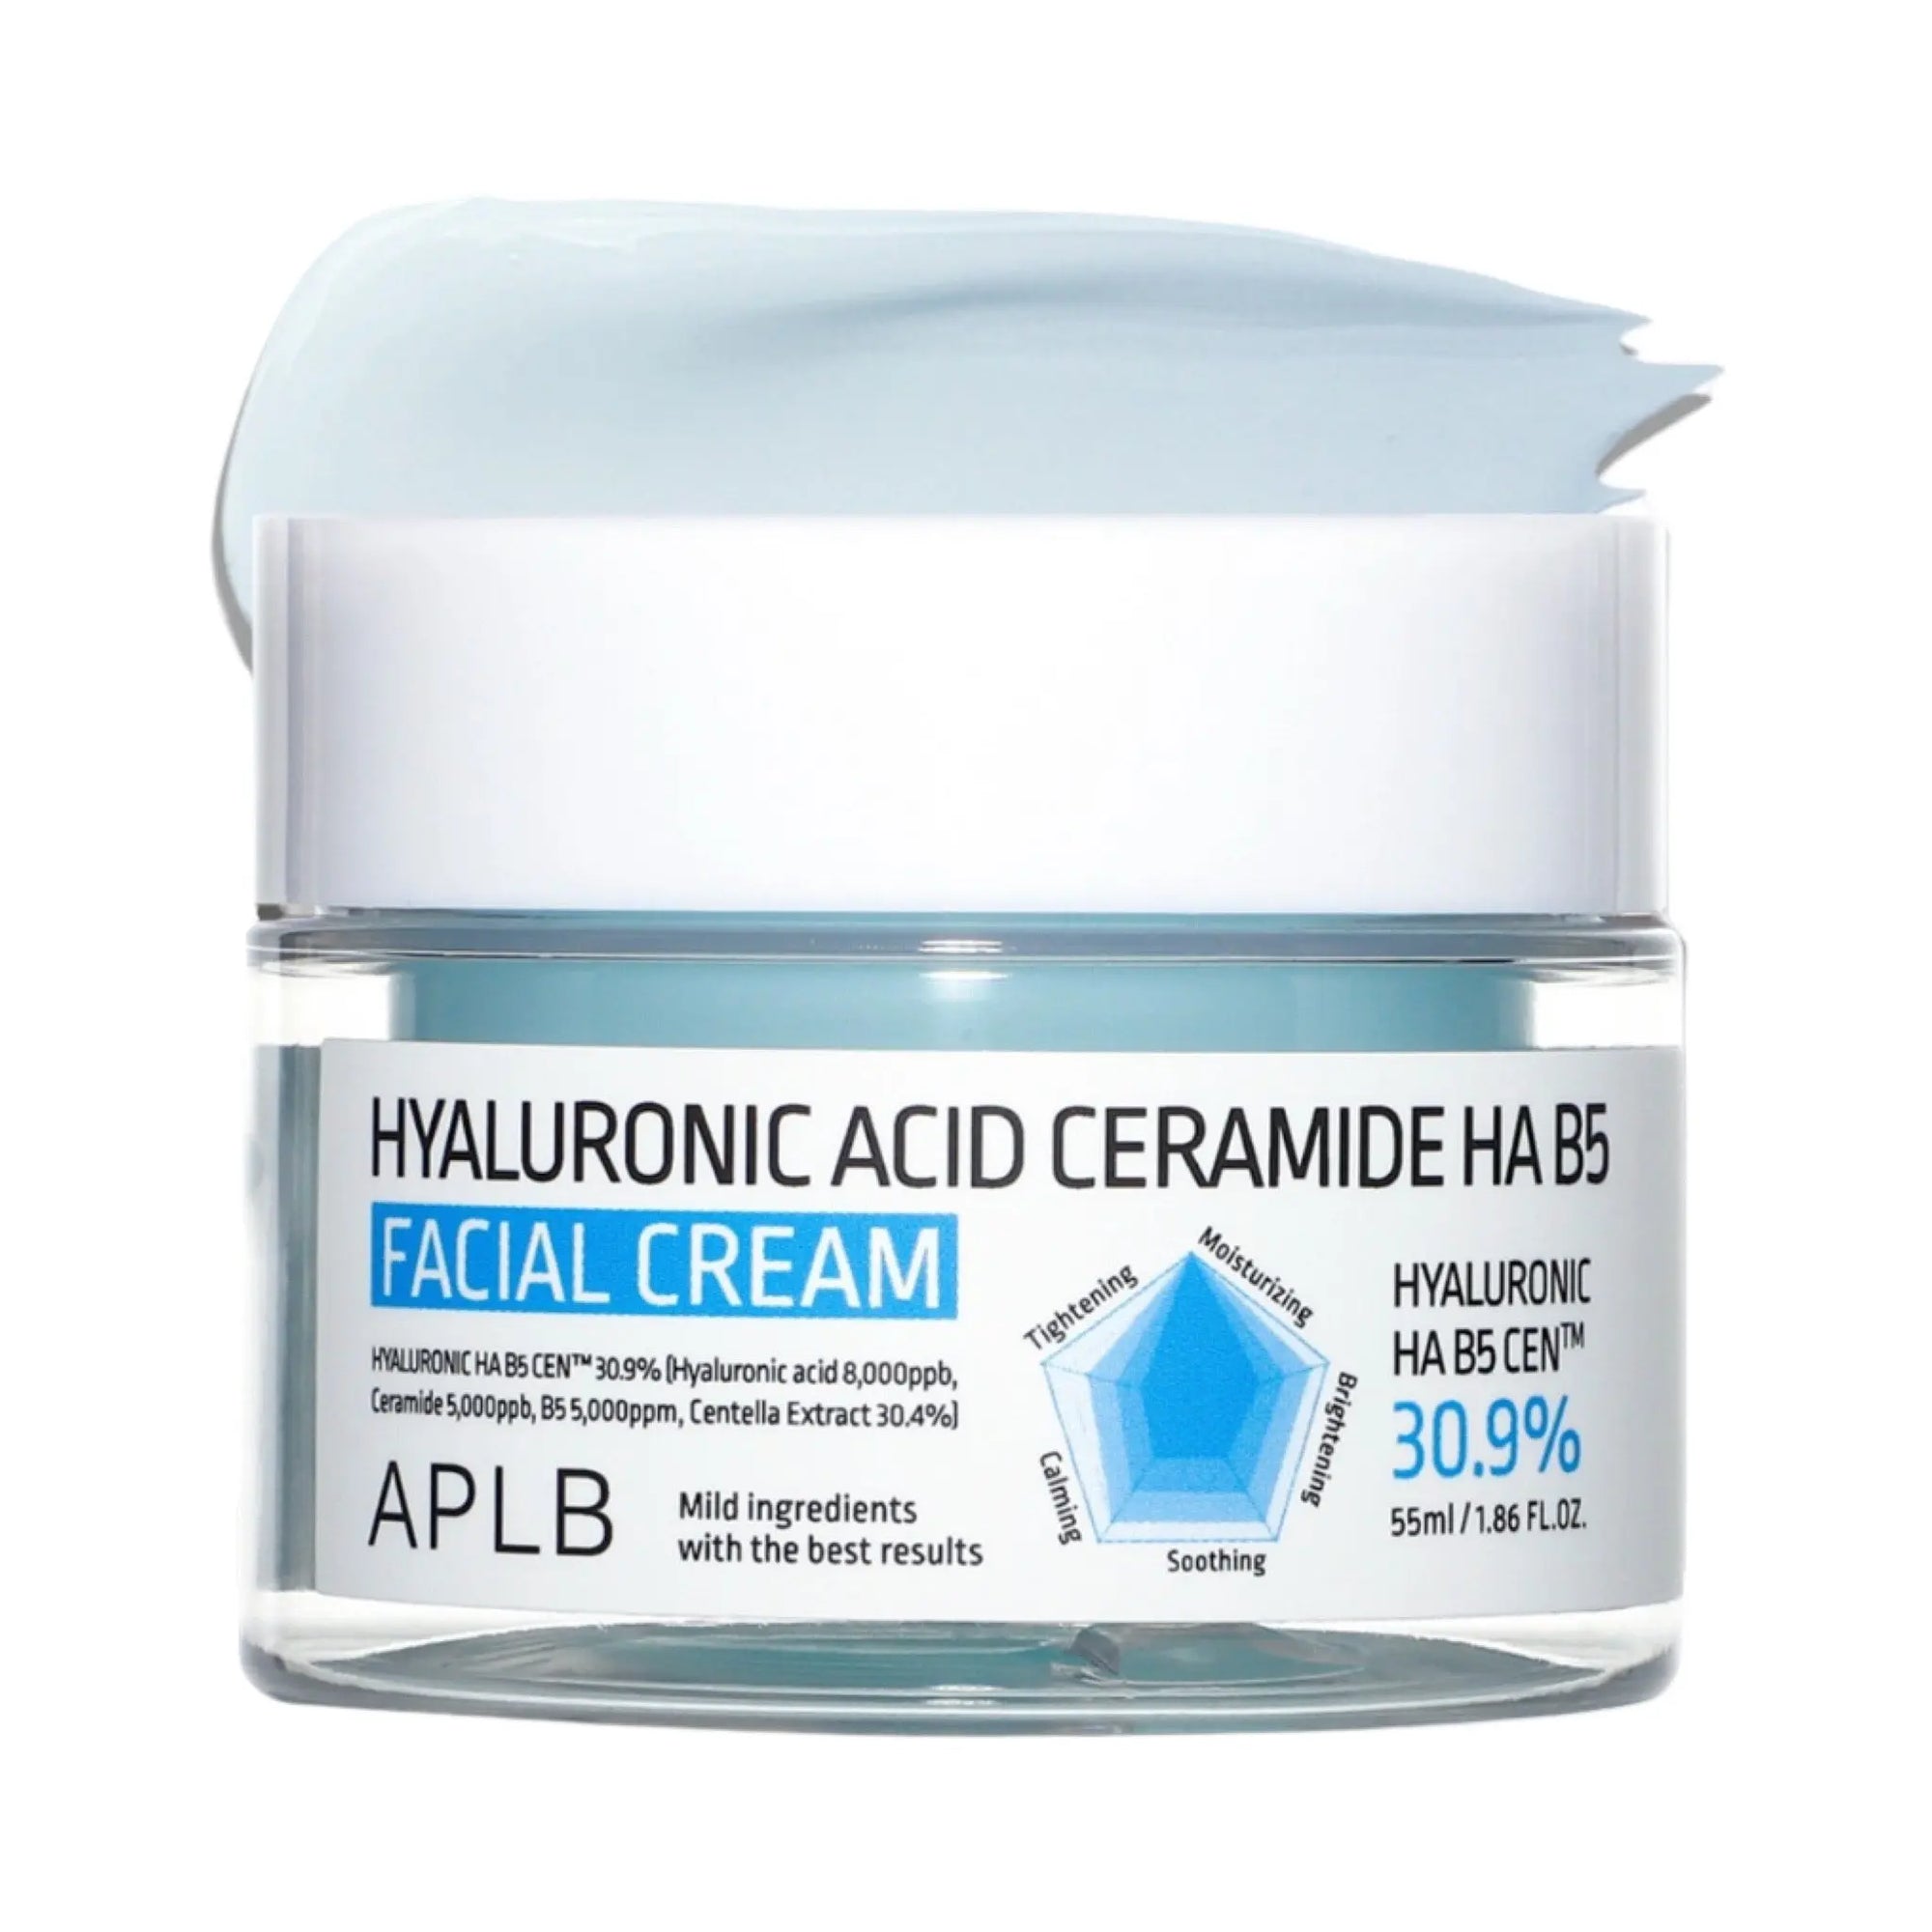 APLB - Hyaluronic Acid Ceramide HA B5 Facial Cream 55mL APLB